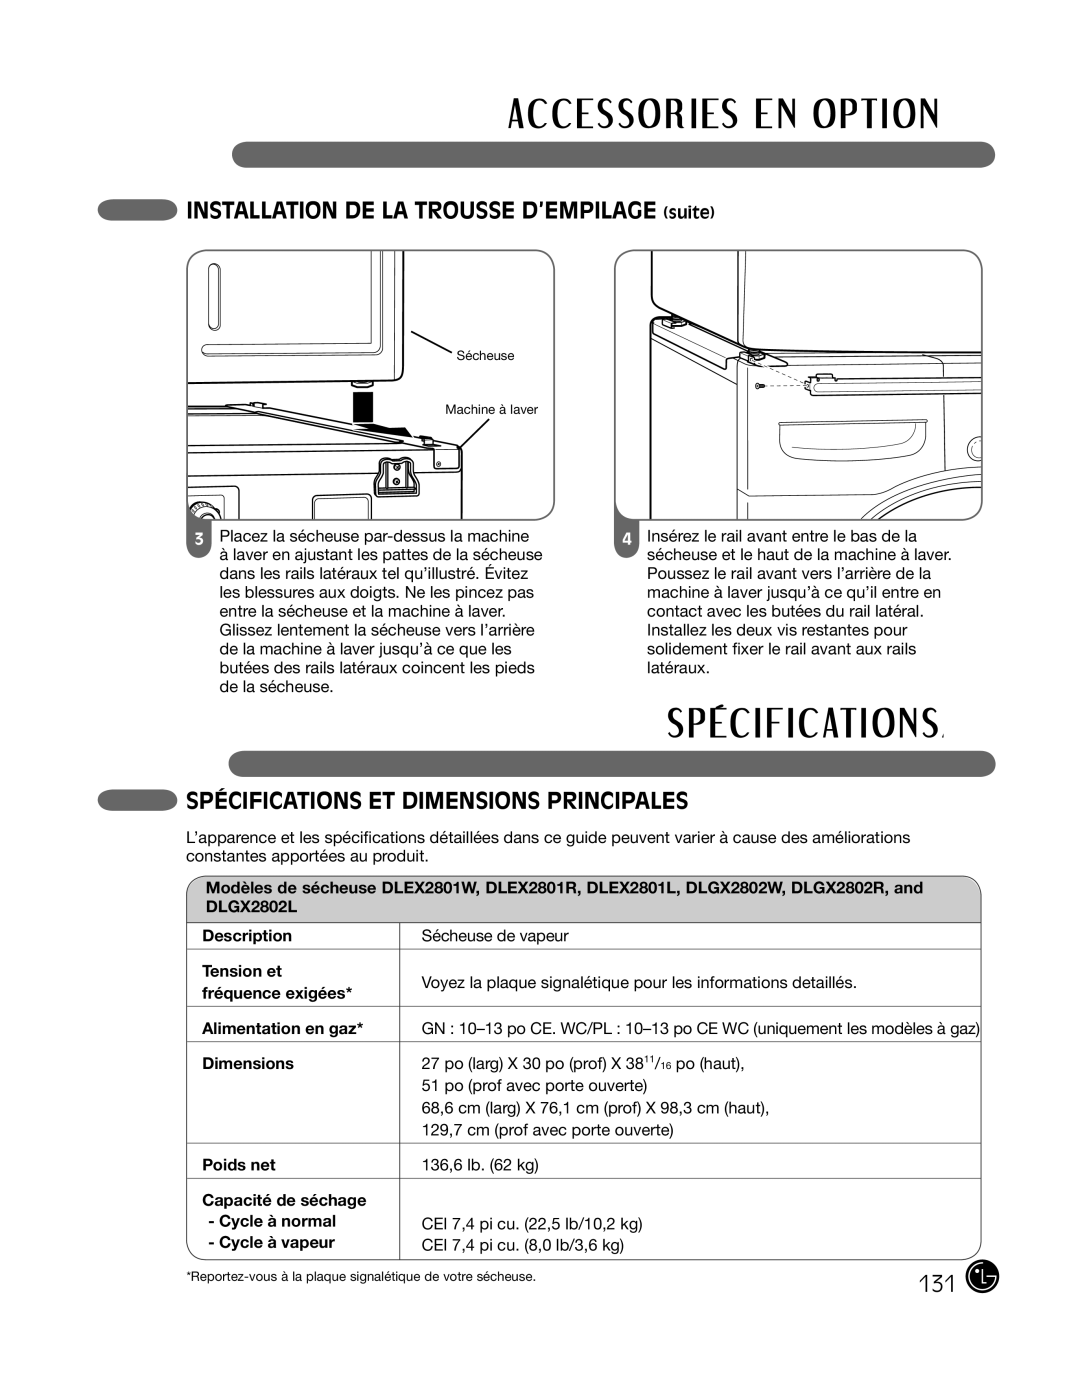 LG Electronics P154 manual Installation de la trousse d’empilage suite, Spécifications Et Dimensions Principales 